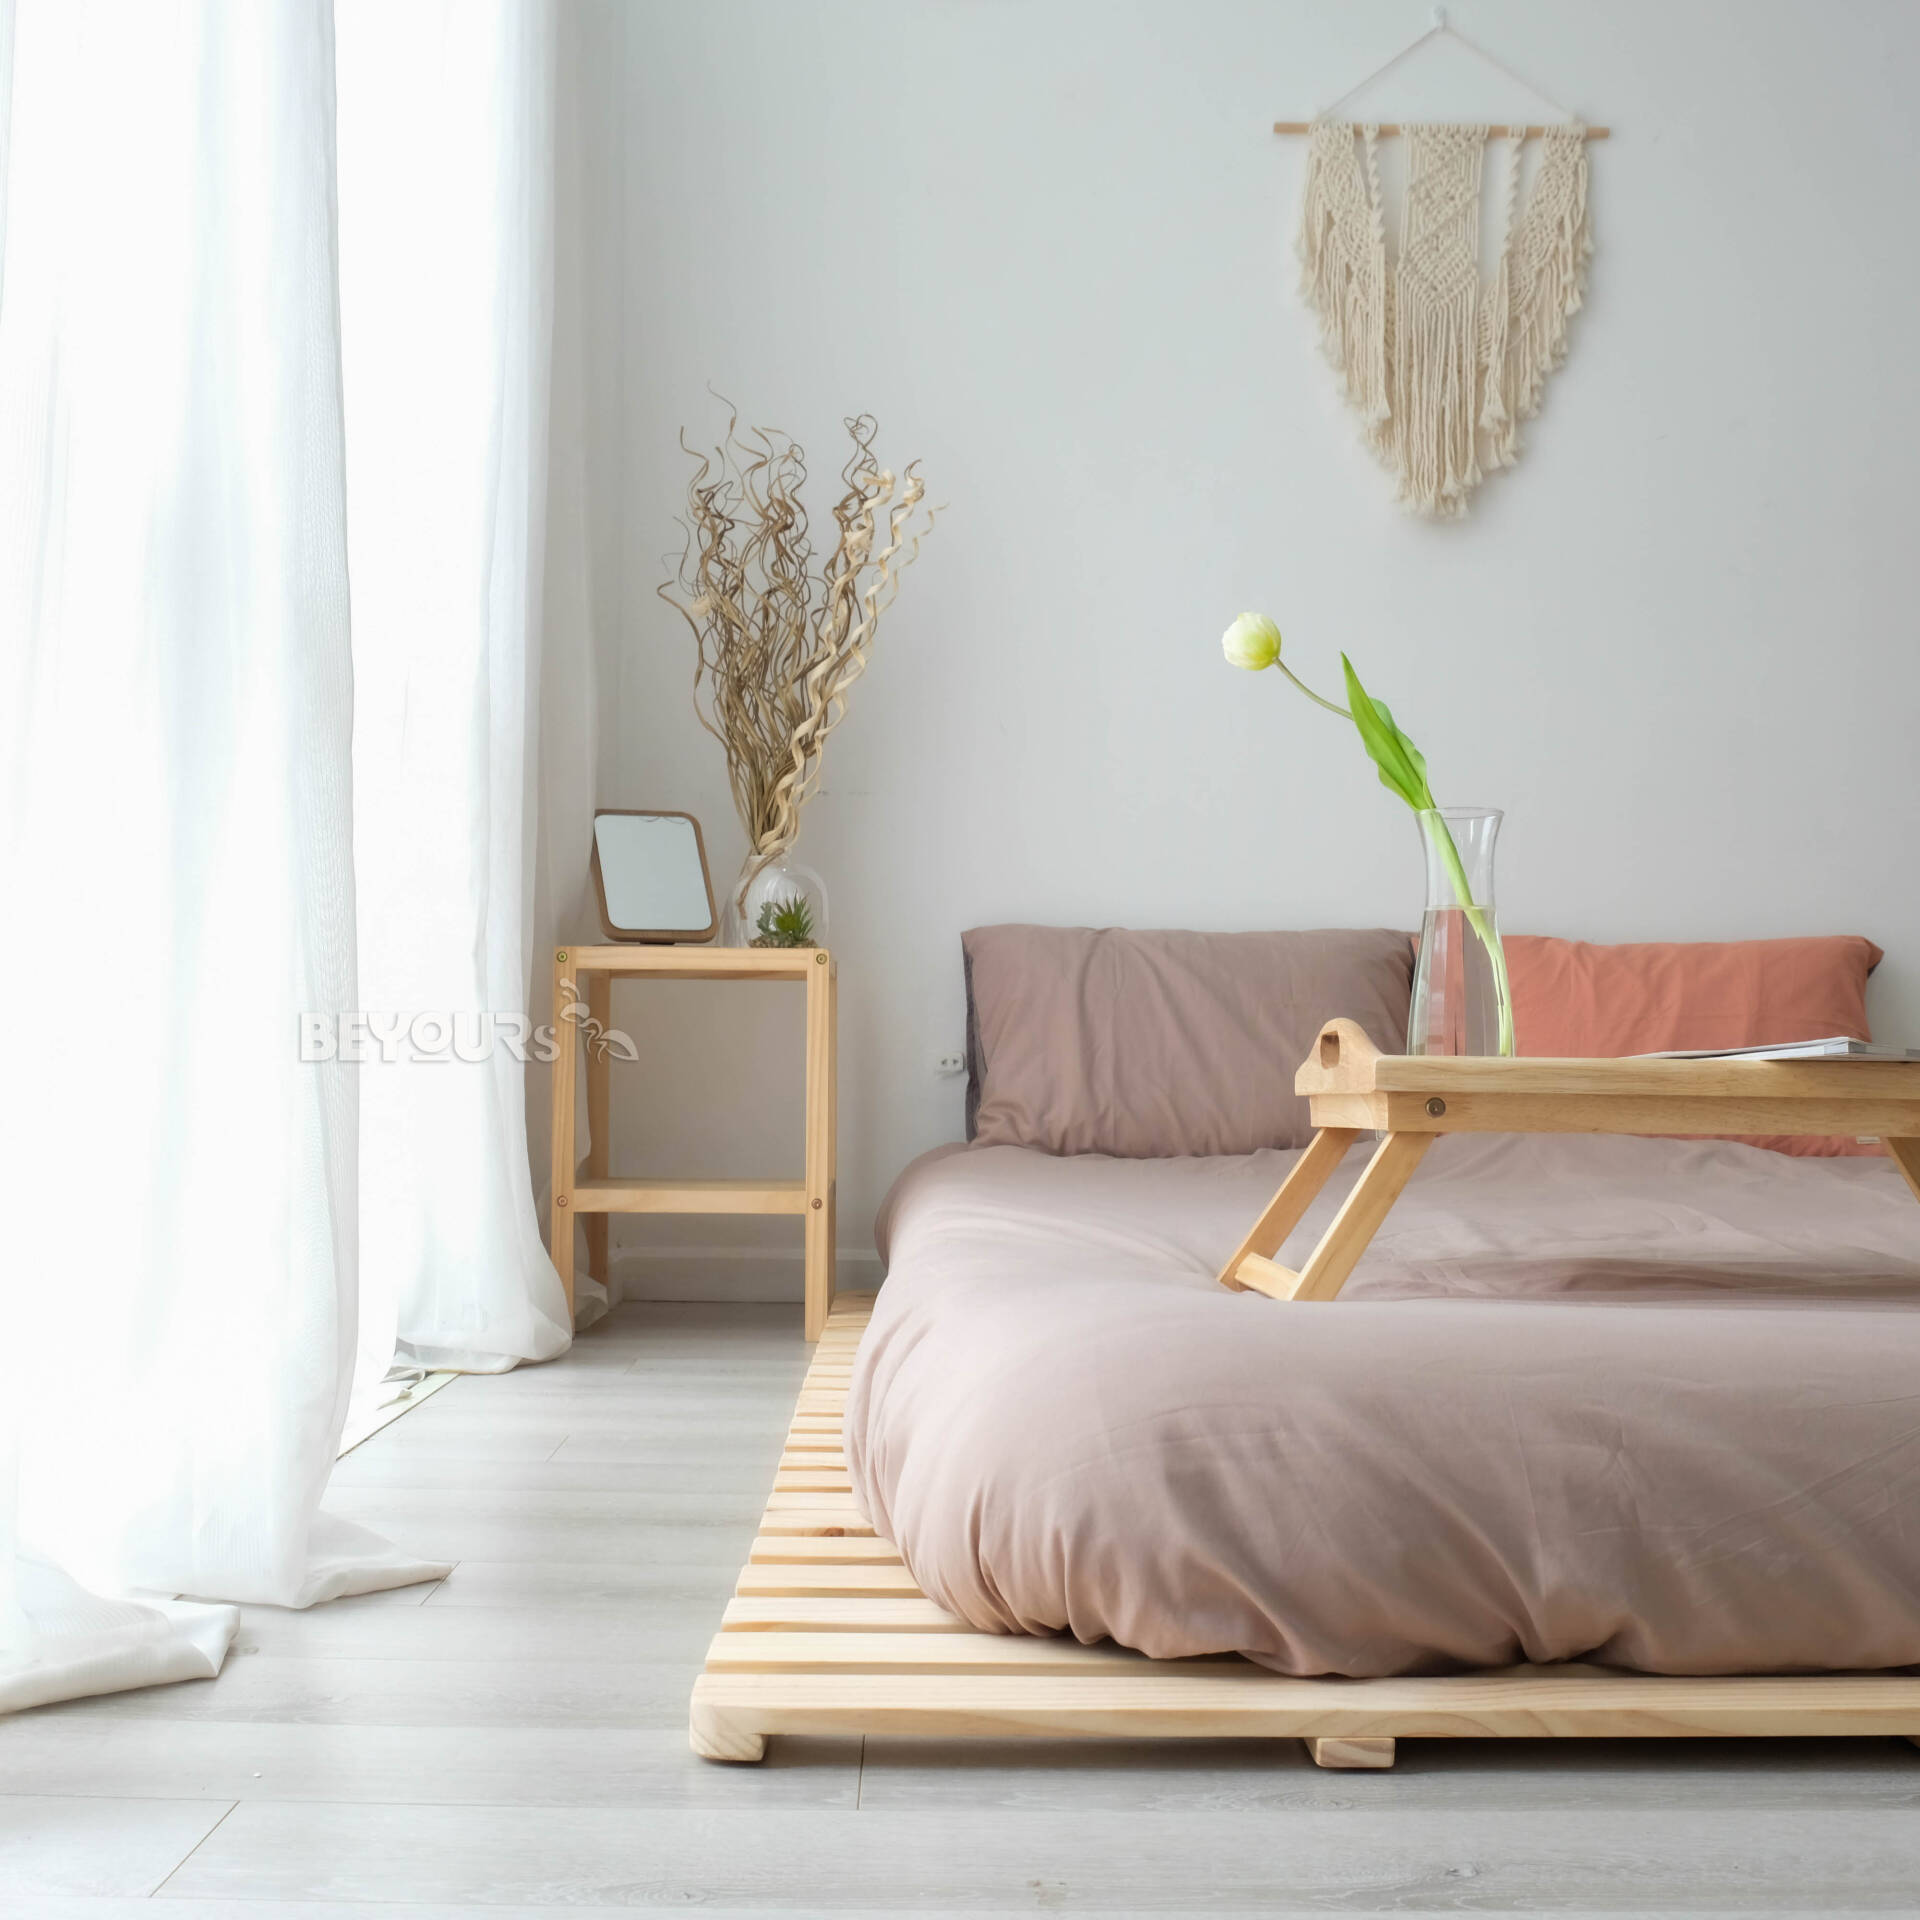 Skinny Pallet Bed là một trong những dòng sản phẩm bán chạy nhất của thương hiệu nội thất lắp ráp BEYOURs, có giá dao động trong khoảng từ 1 triệu - 2 triệu đồng